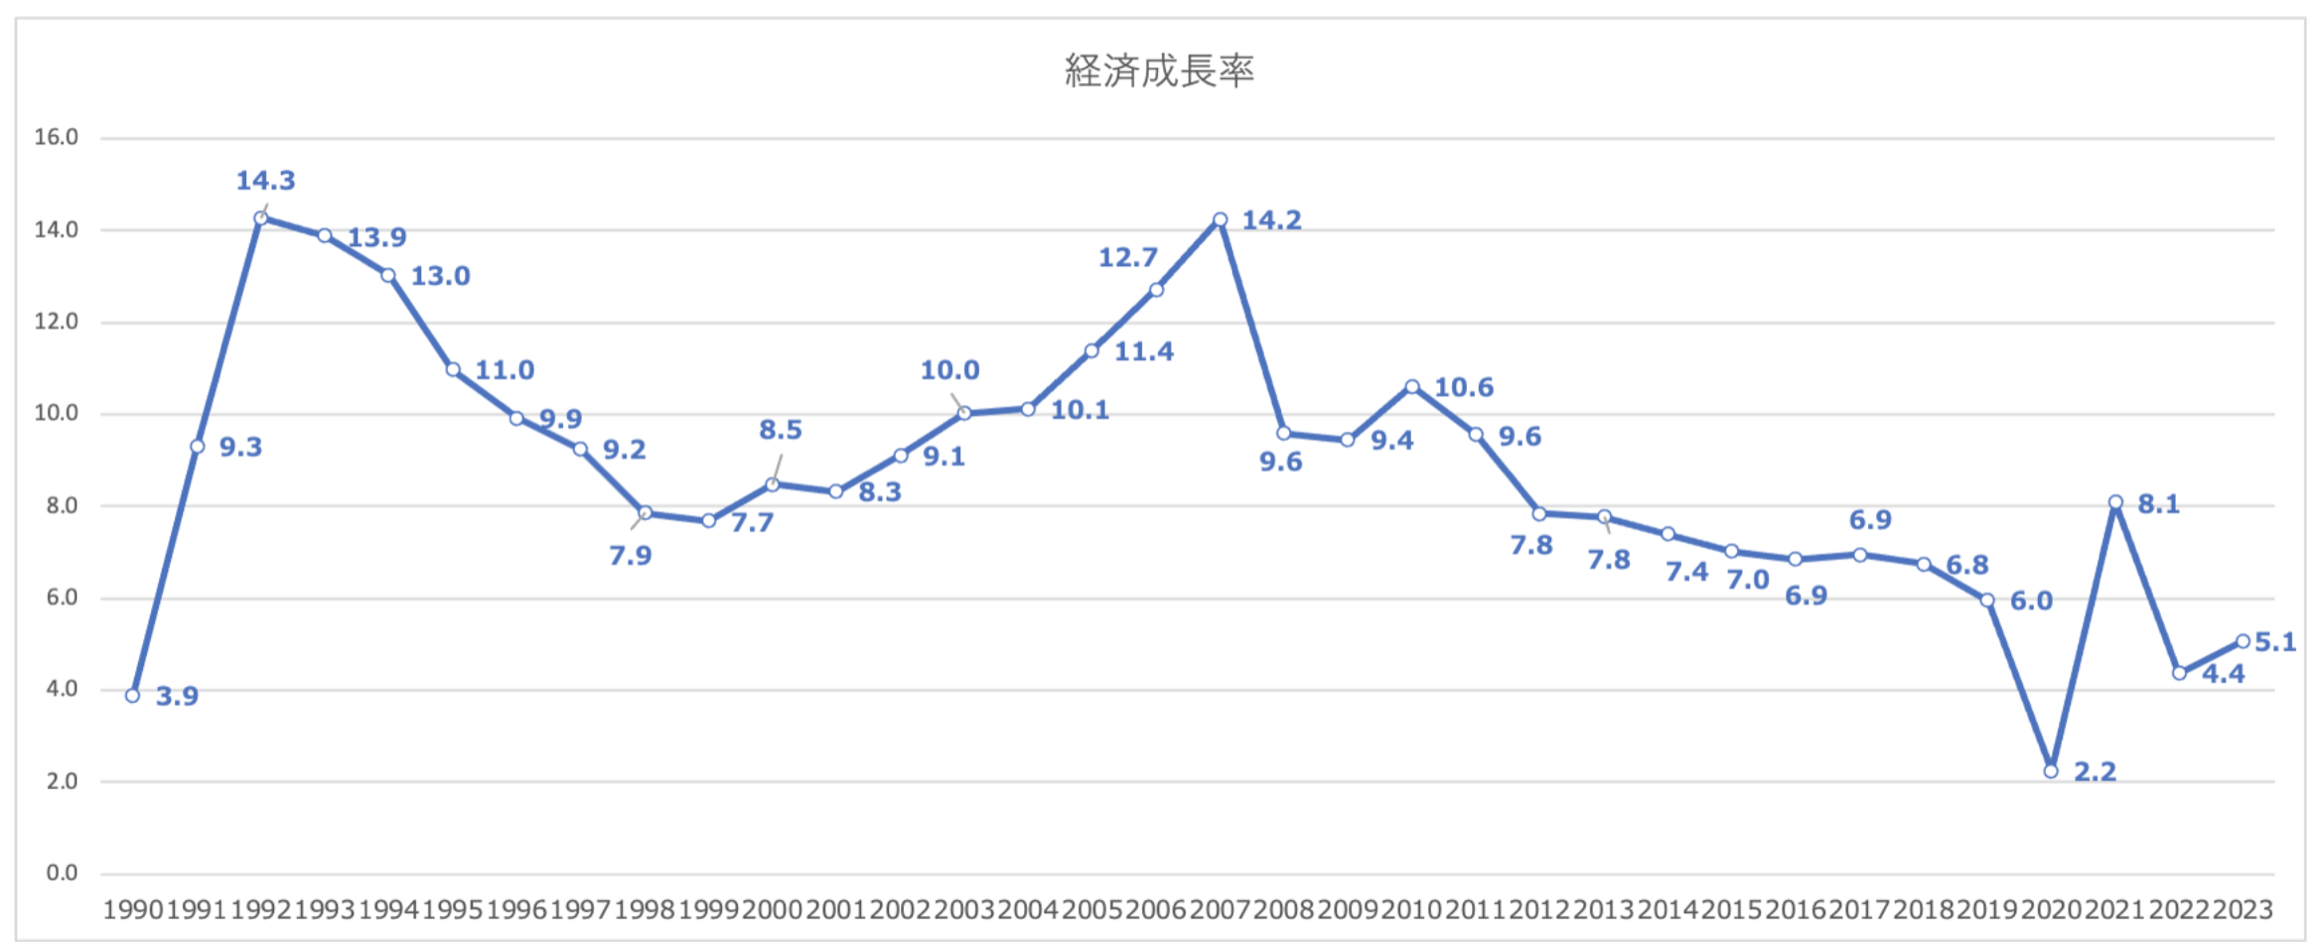 中国の経済成長率の推移